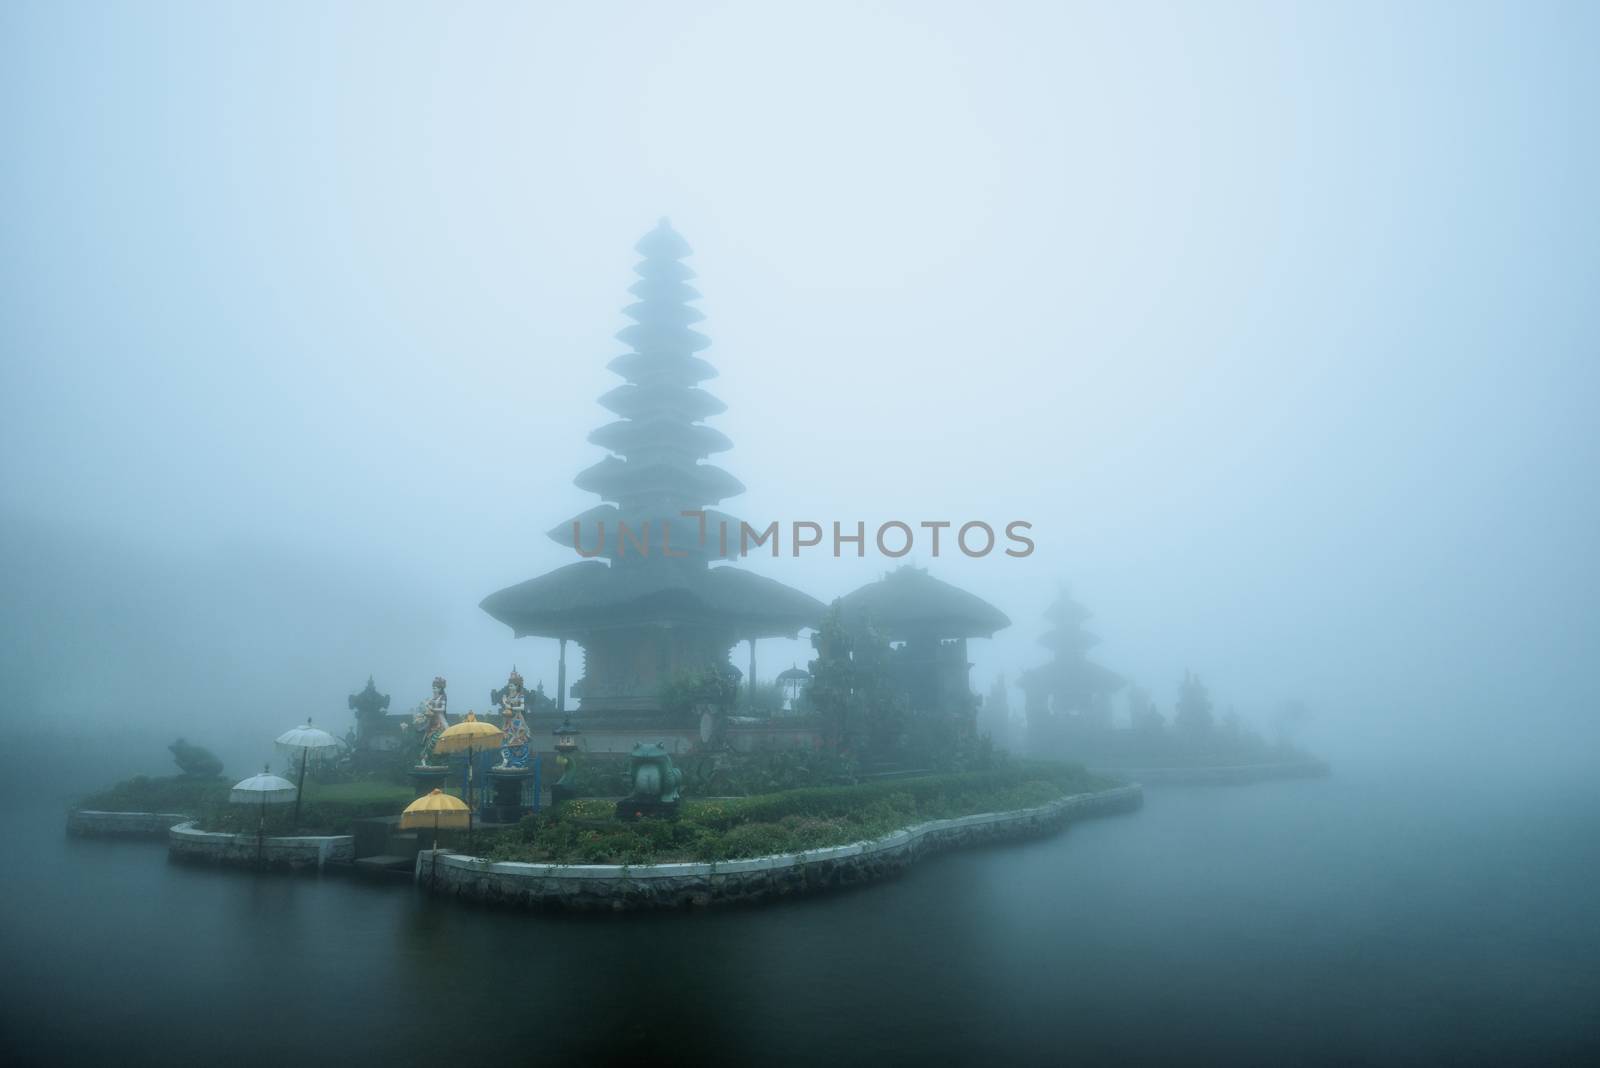 Foggy weather at Pura Ulun Danu Beratan temple in Bali, Indonesia.